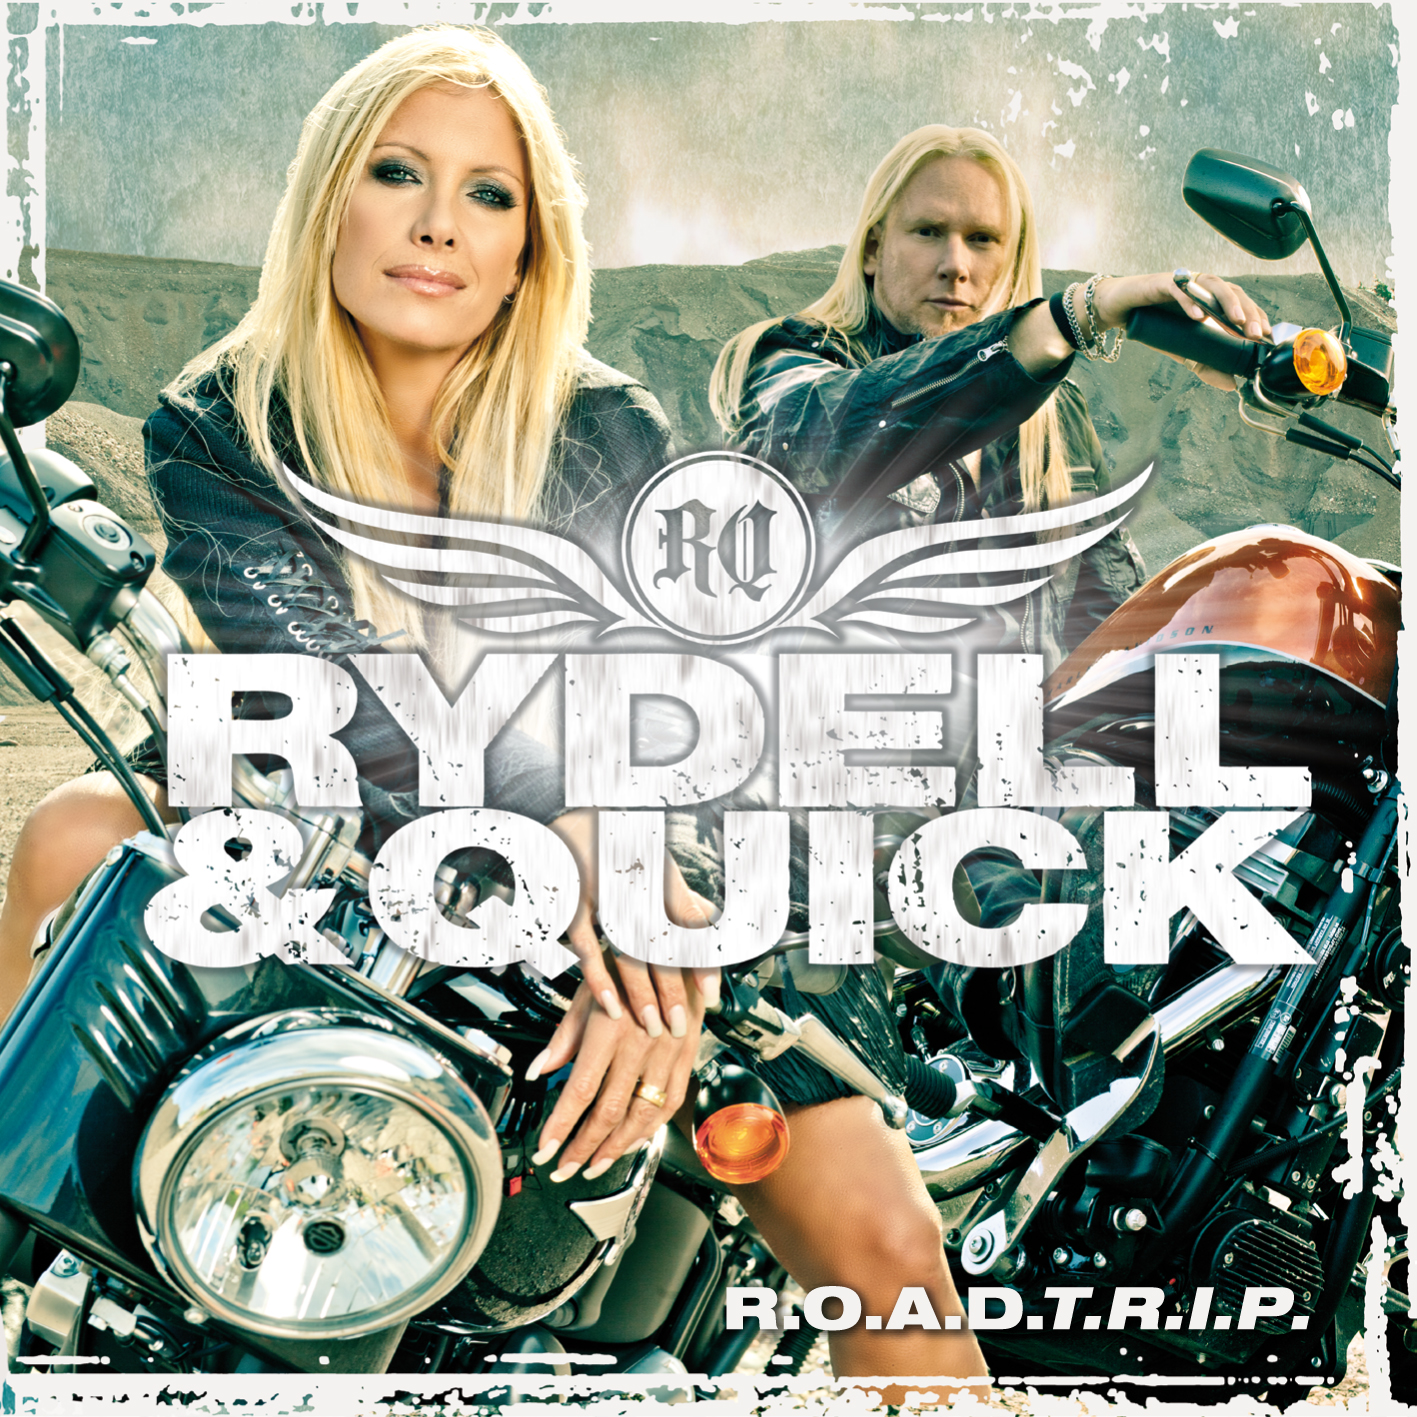 Like a rockstar песня. Rydell & quick - r.o.a.d.t.r.i.p.. Rydell & quick. TT quick группа. Rydell & quick - r.o.c.k.o.h.o.l.i.c.